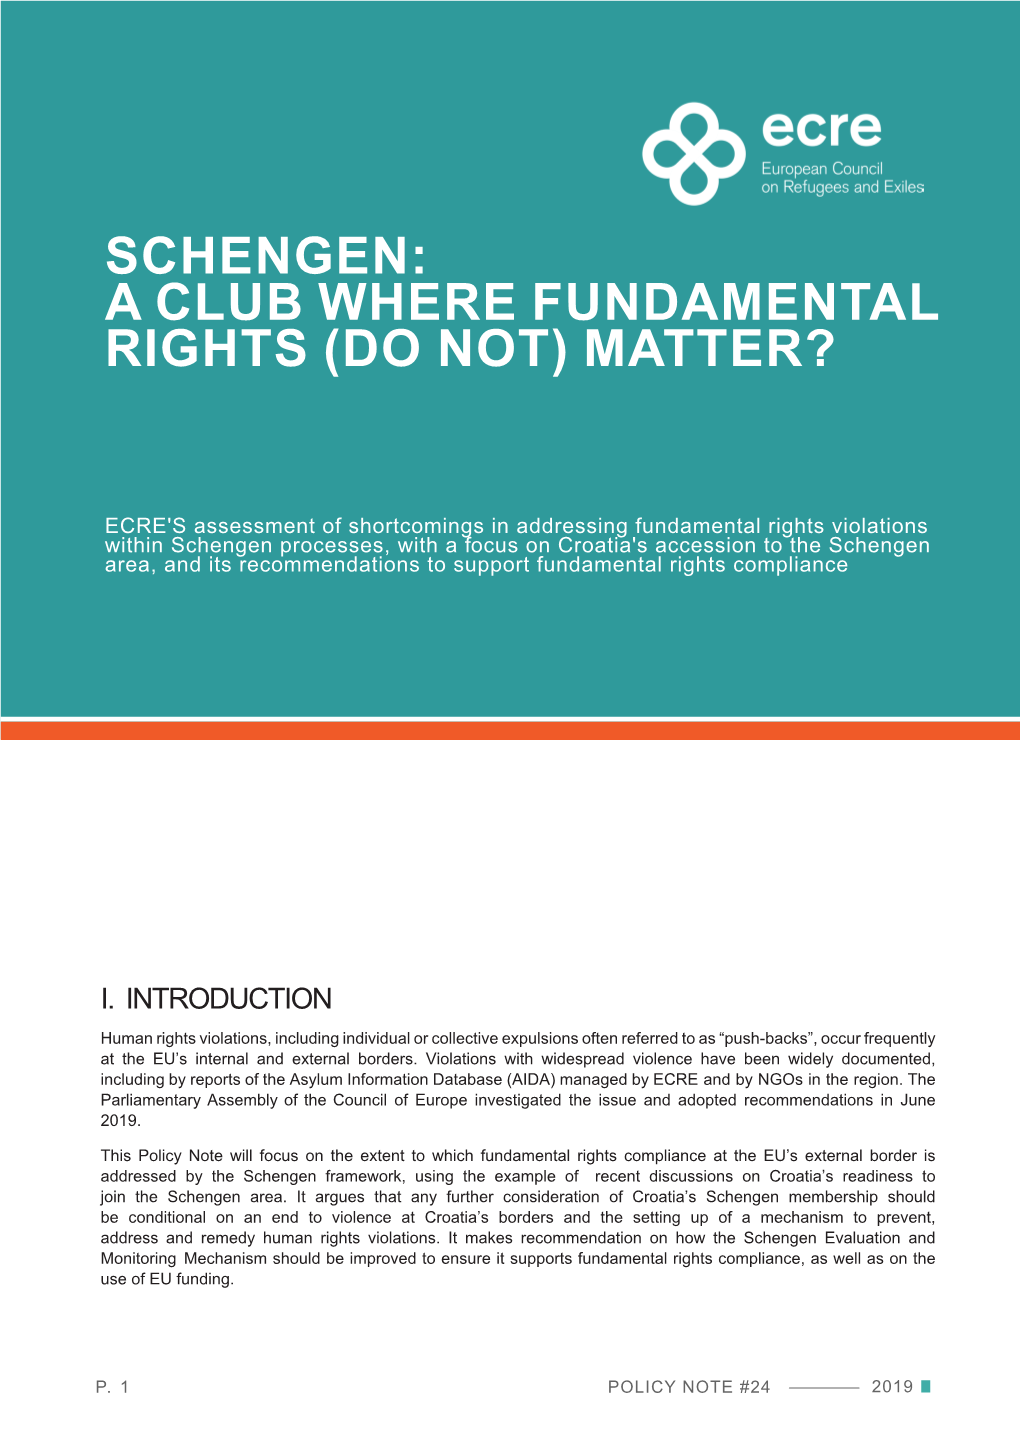 Schengen: a Club Where Fundamental Rights (Do Not) Matter?